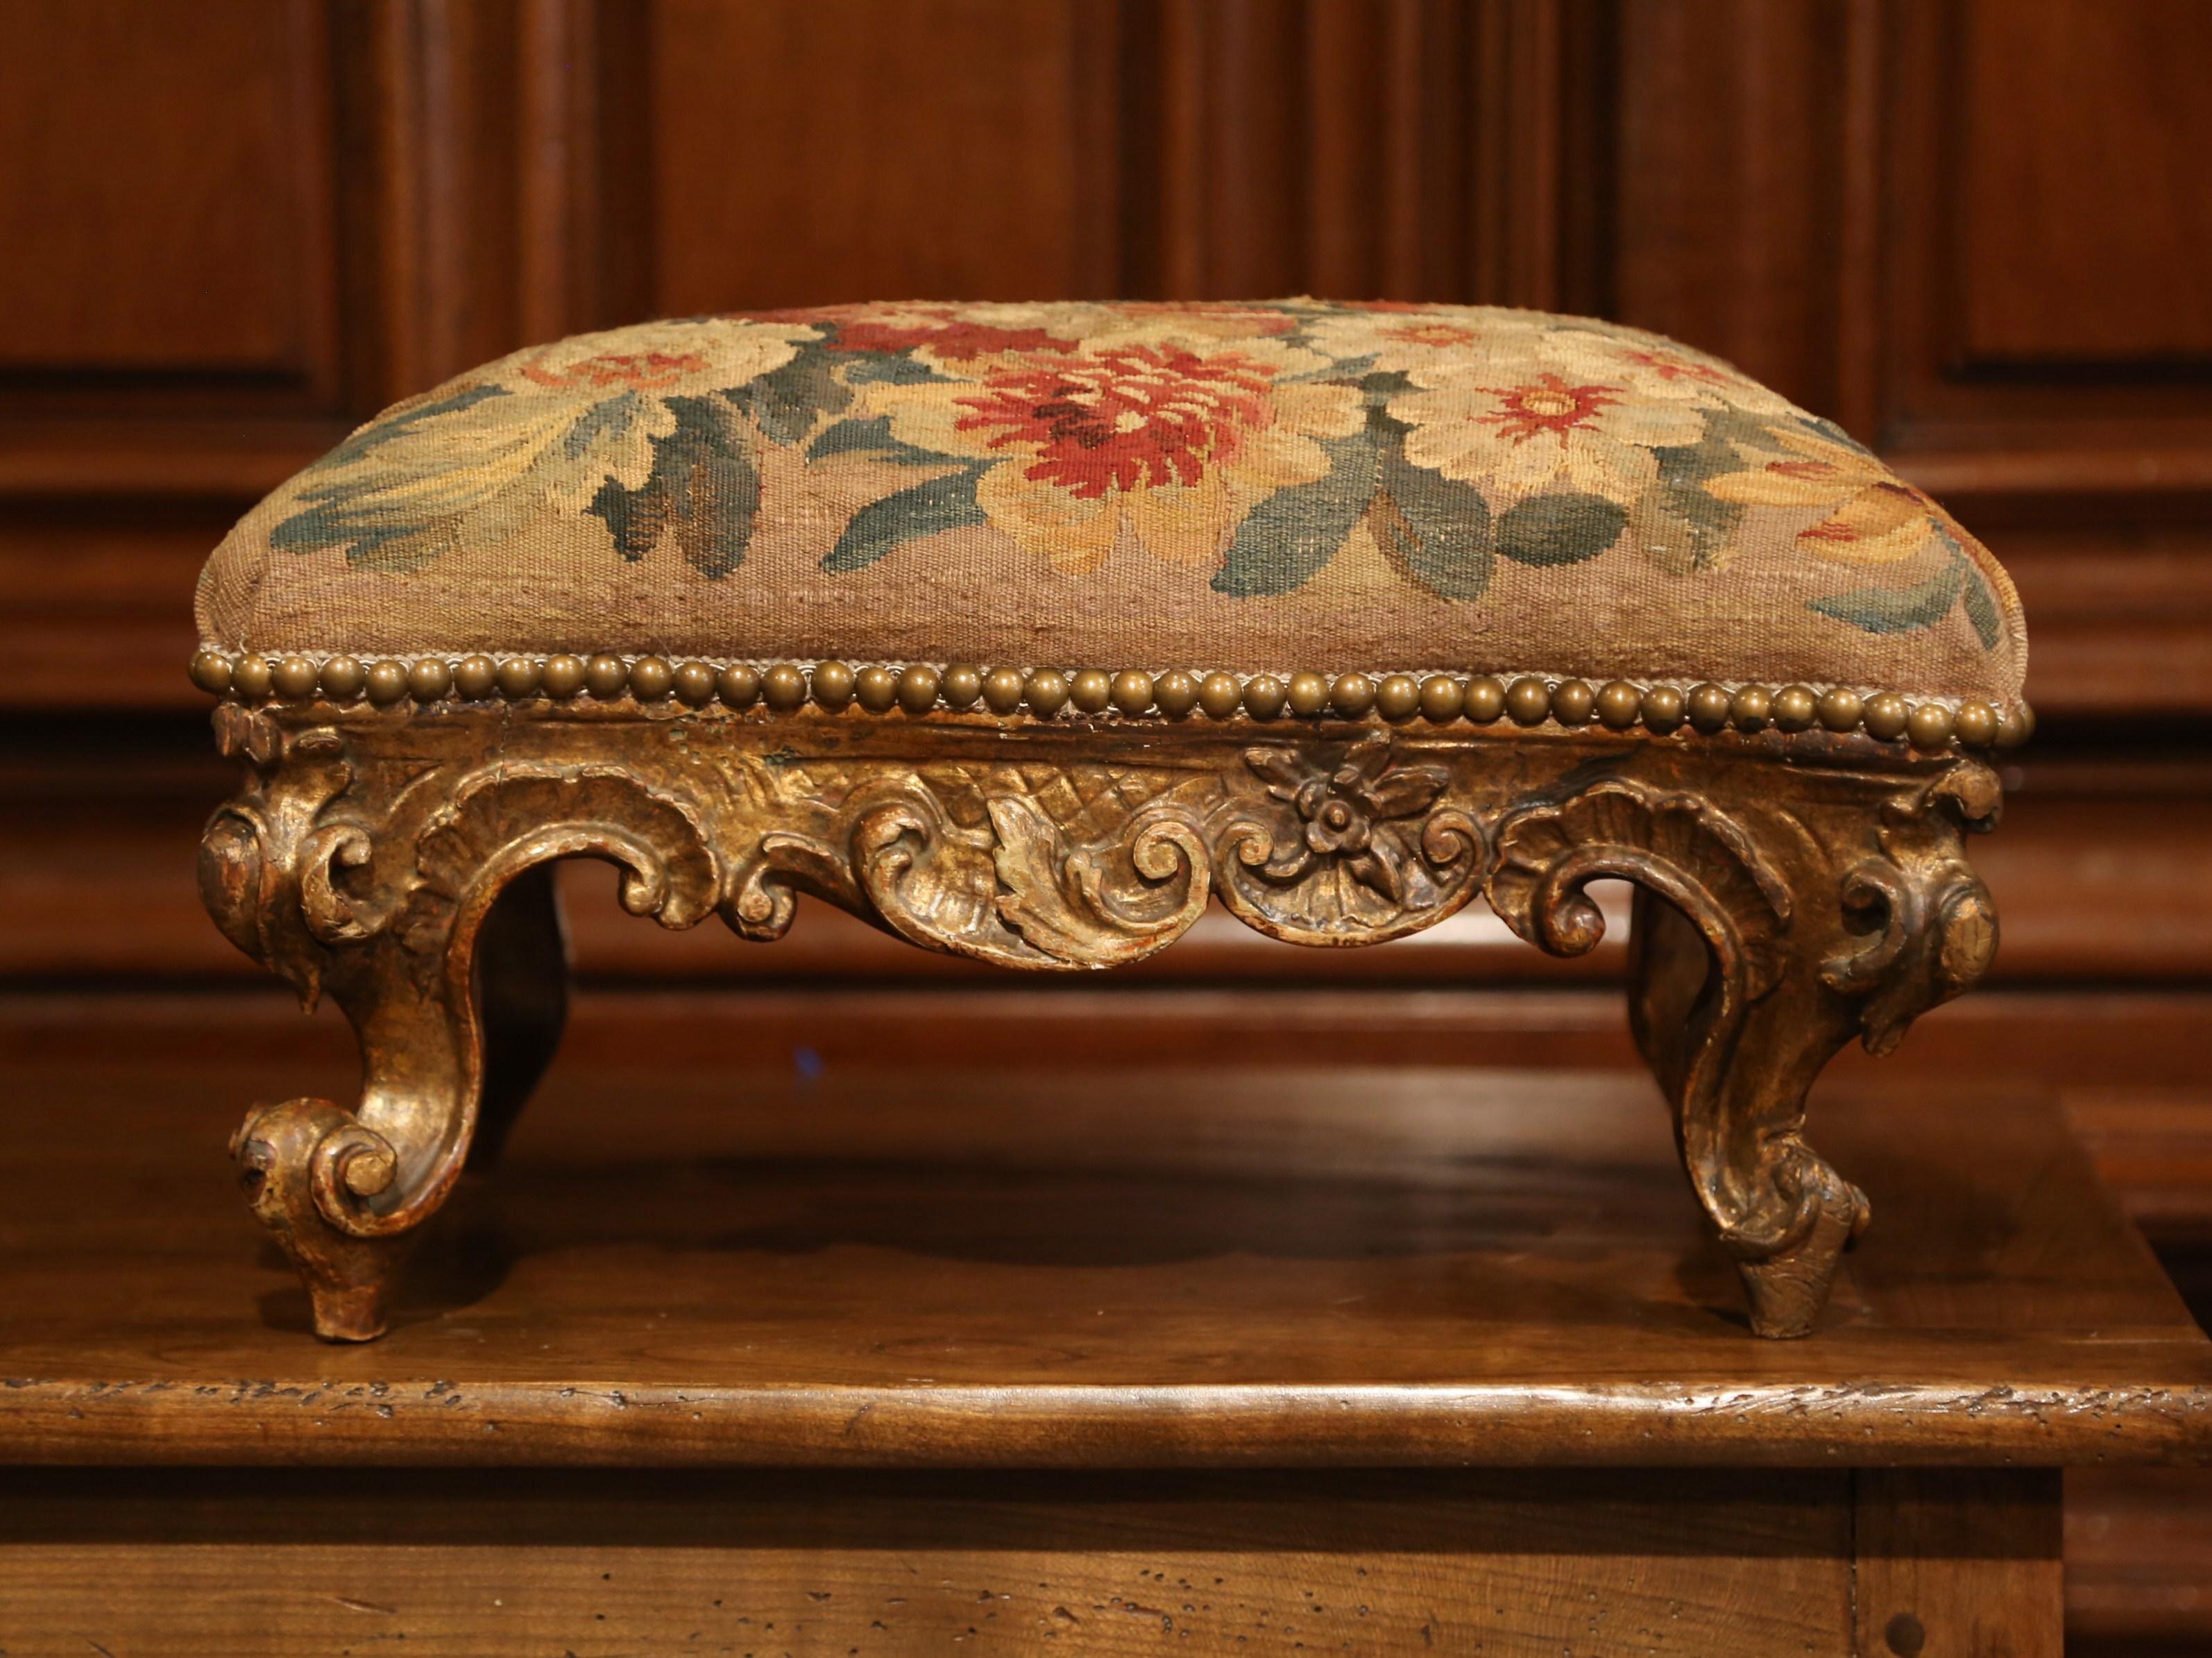 Dieser elegante:: antike Louis XV-Fußhocker wurde um 1850 in Frankreich hergestellt. Die geschnitzte:: rechteckige Rokoko-Fußstütze weist kunstvolle Schnitzereien mit Muschel- und Blattwerkmotiv auf:: hat geschwungene Füße über der komplizierten